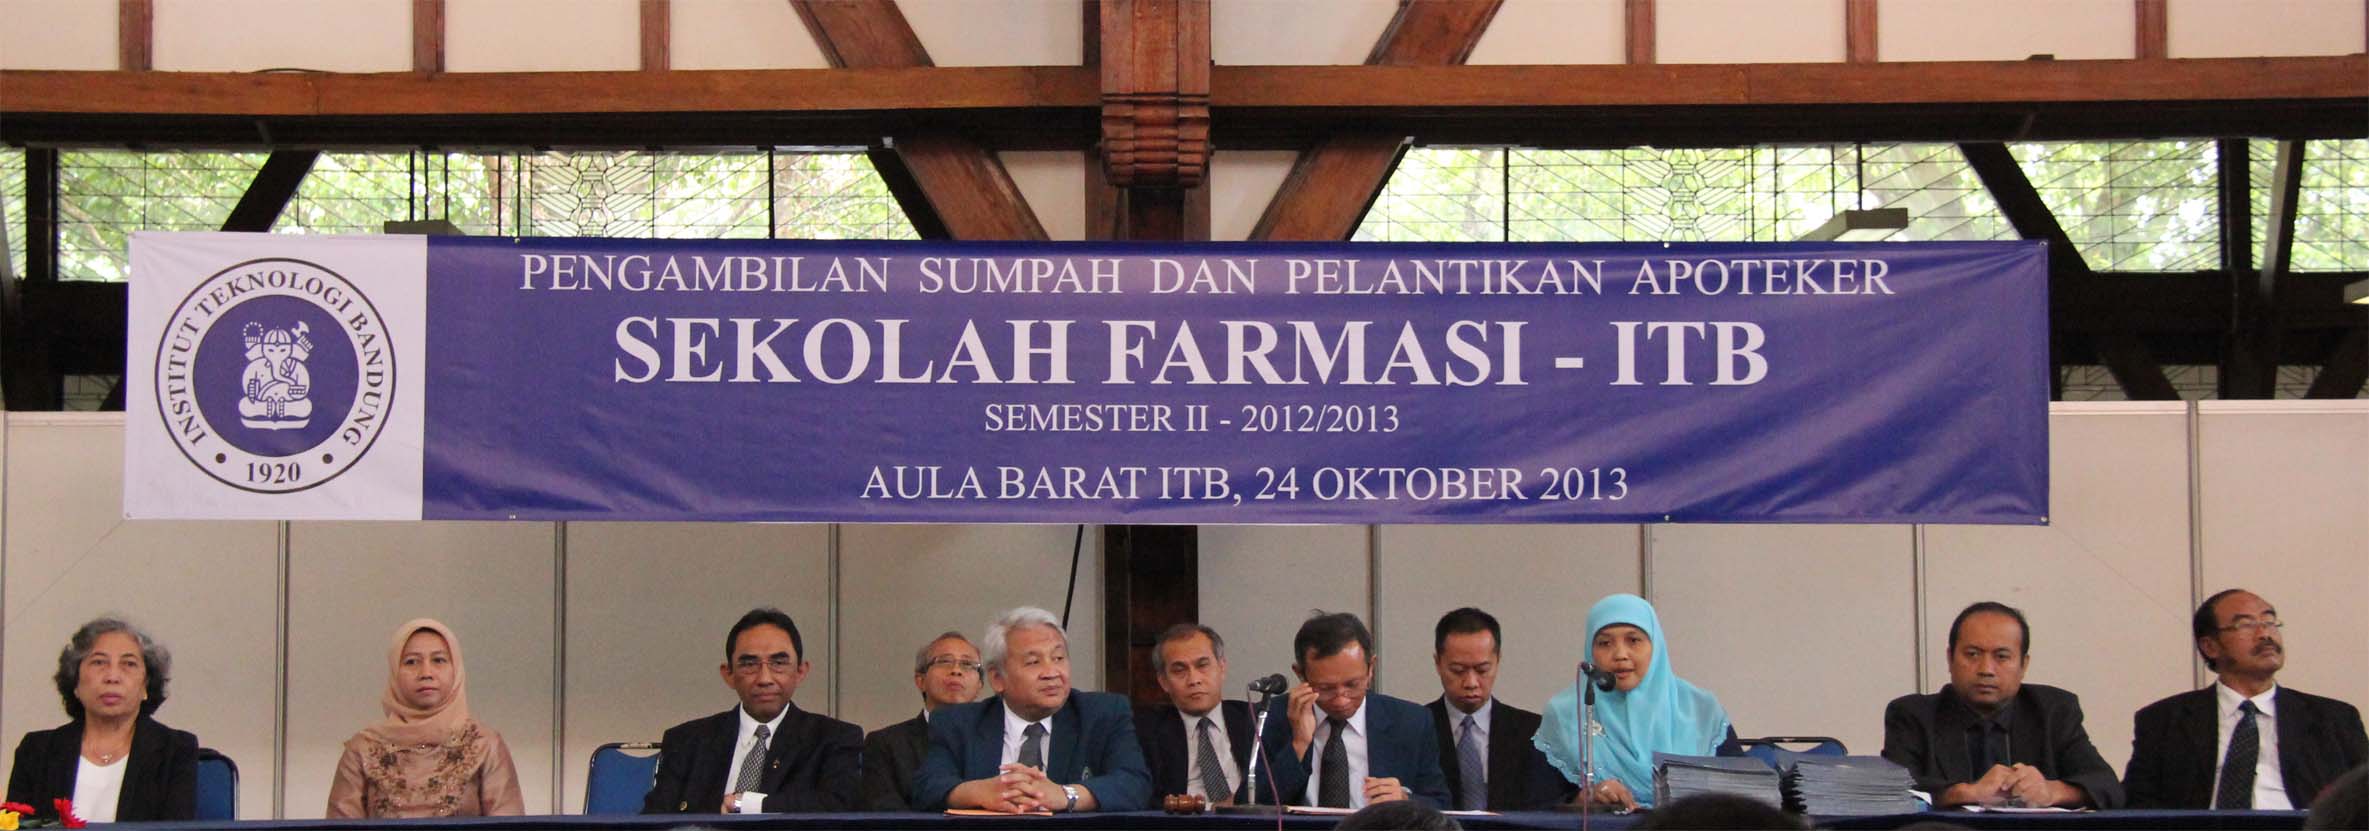 Sekolah Farmasi Itb Lantik Seratus Lima Apoteker Baru Institut Teknologi Bandung